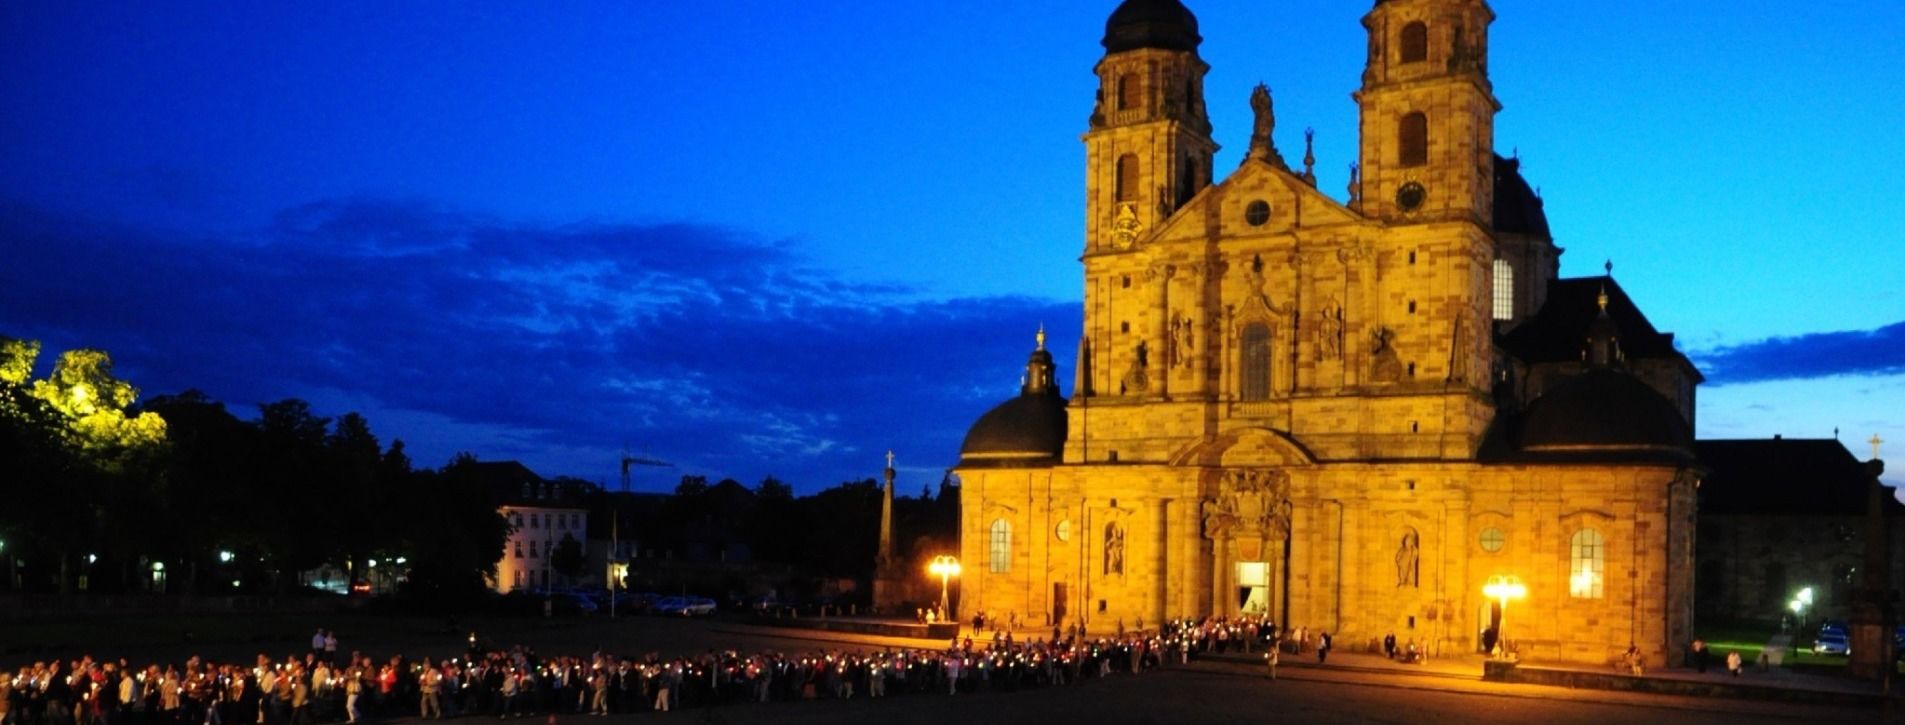 Kirchlicher Feiertag: Mariä Himmelfahrt, Pontifikalamt im Fuldaer Dom, Segnung der Kräuter und traditionelle Lichterprozession